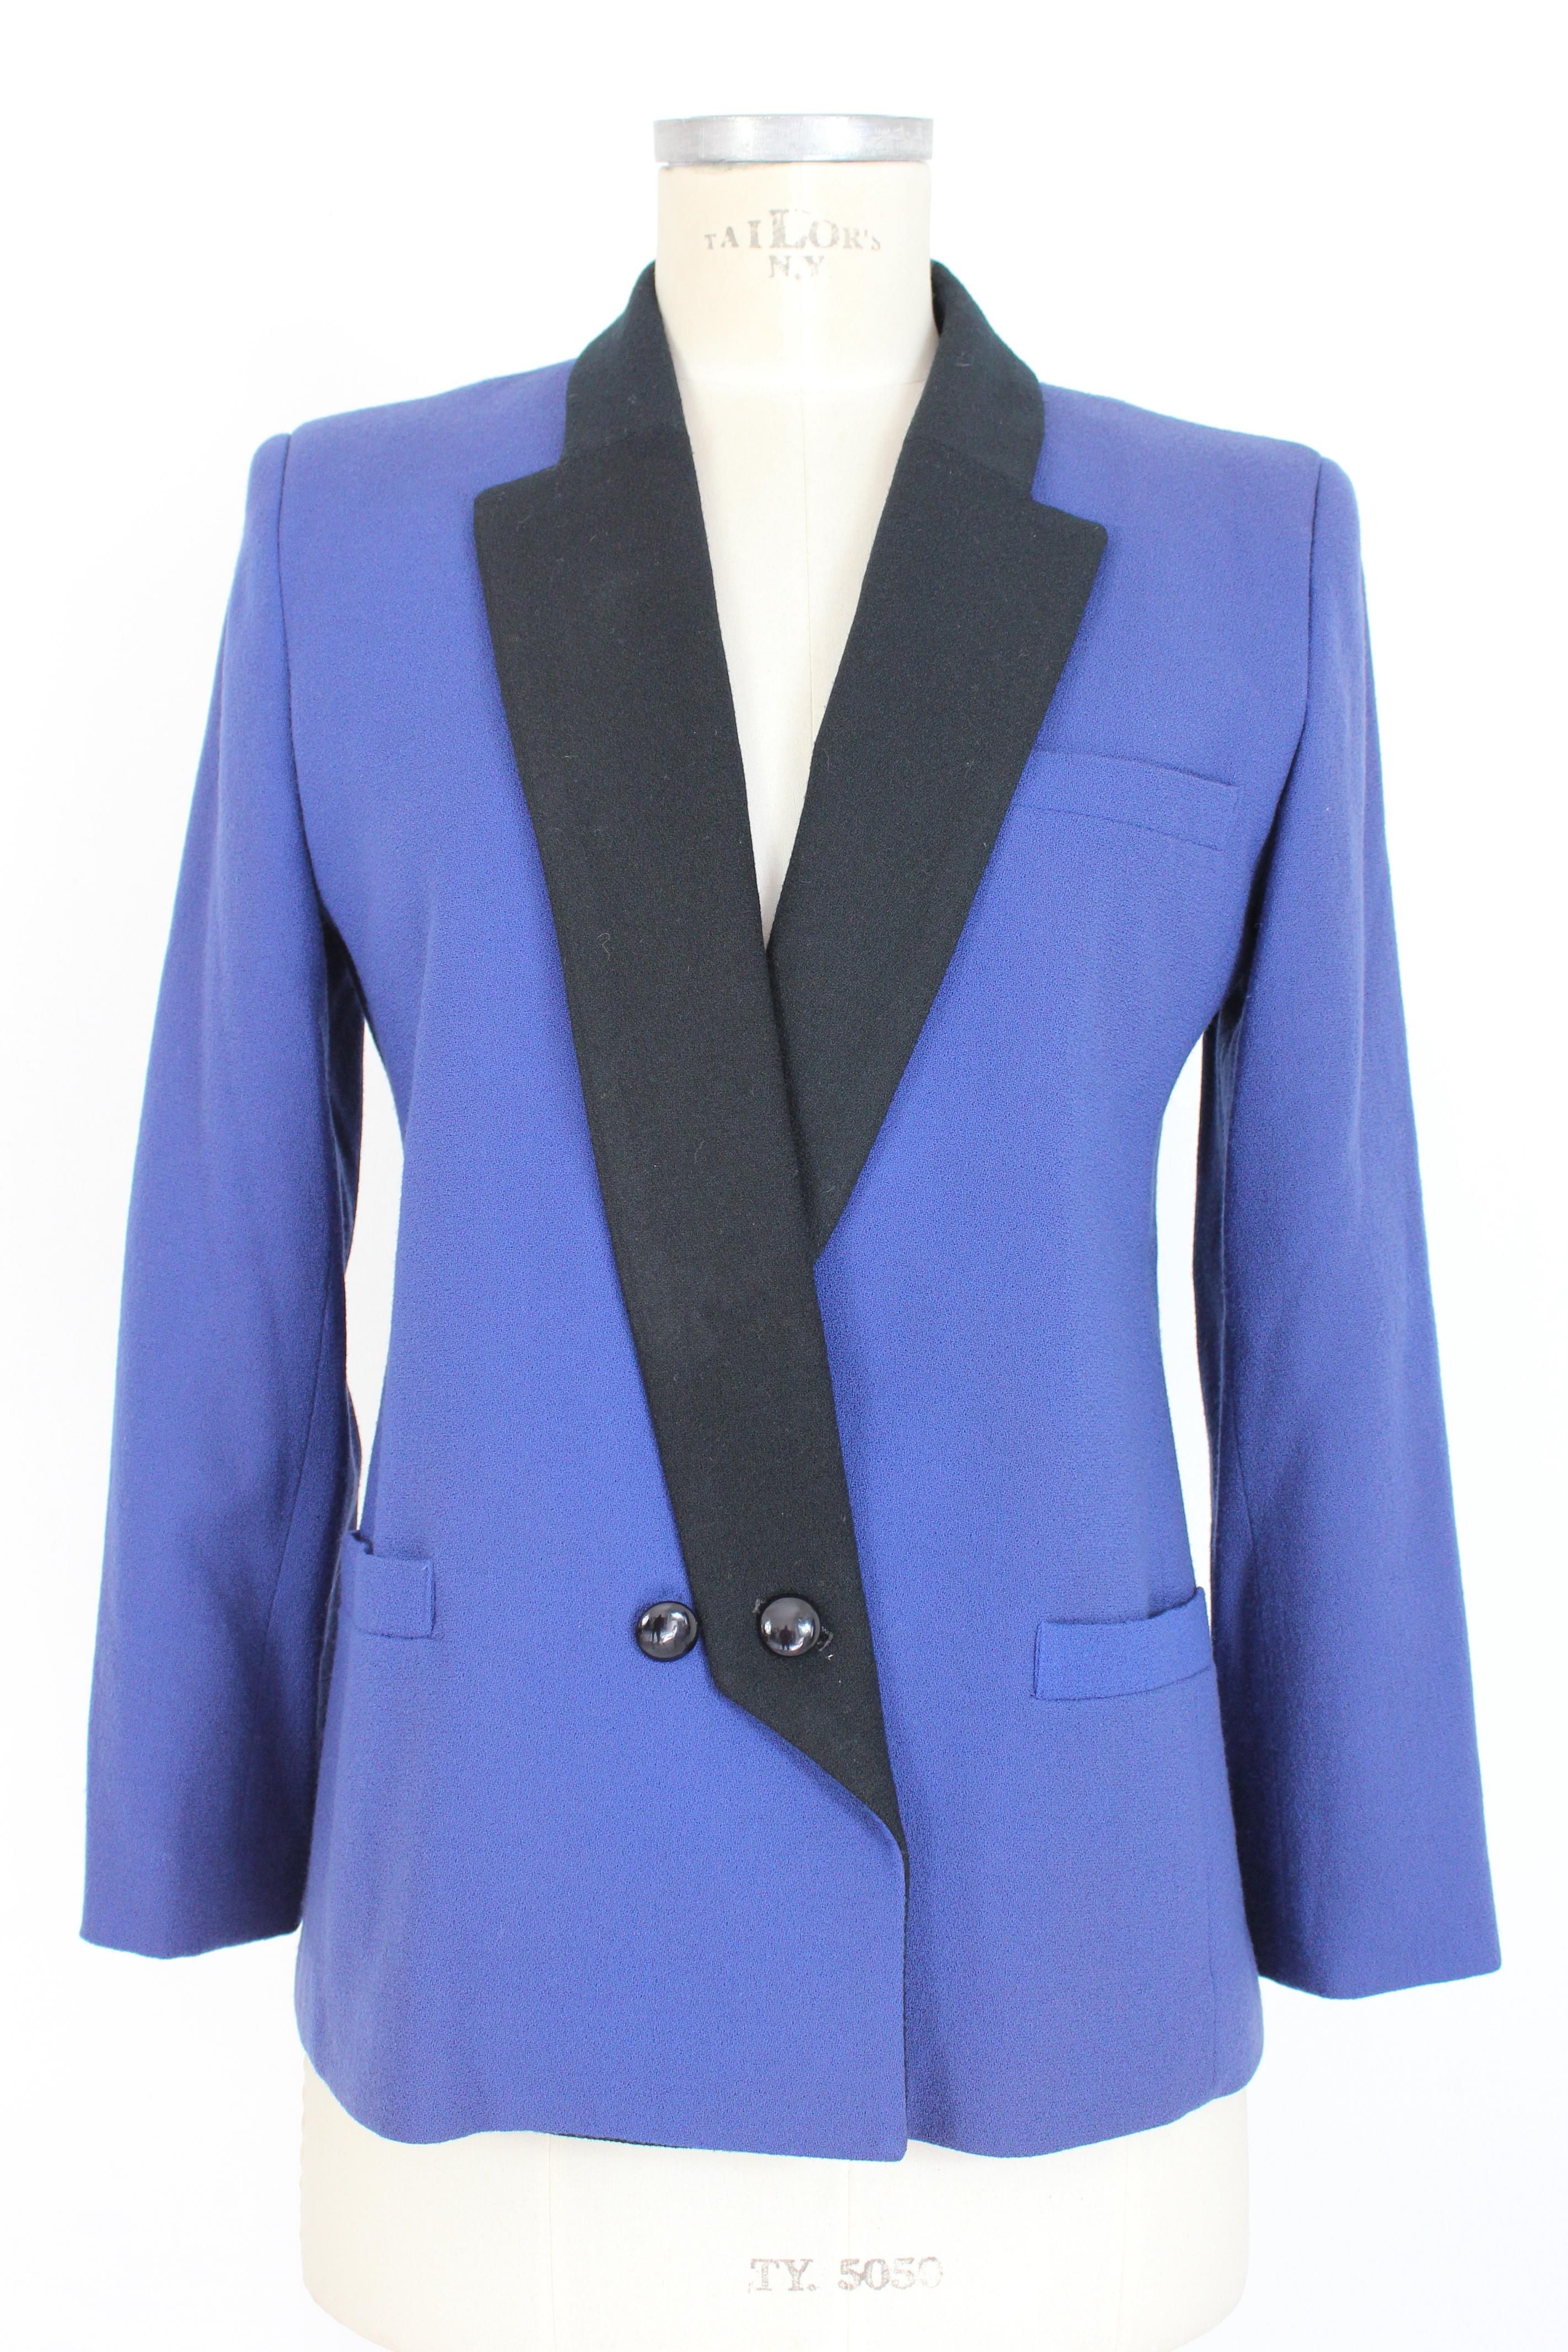 Oleg Cassini Blue Black Wool Pleated Evening Suit Skirt 2